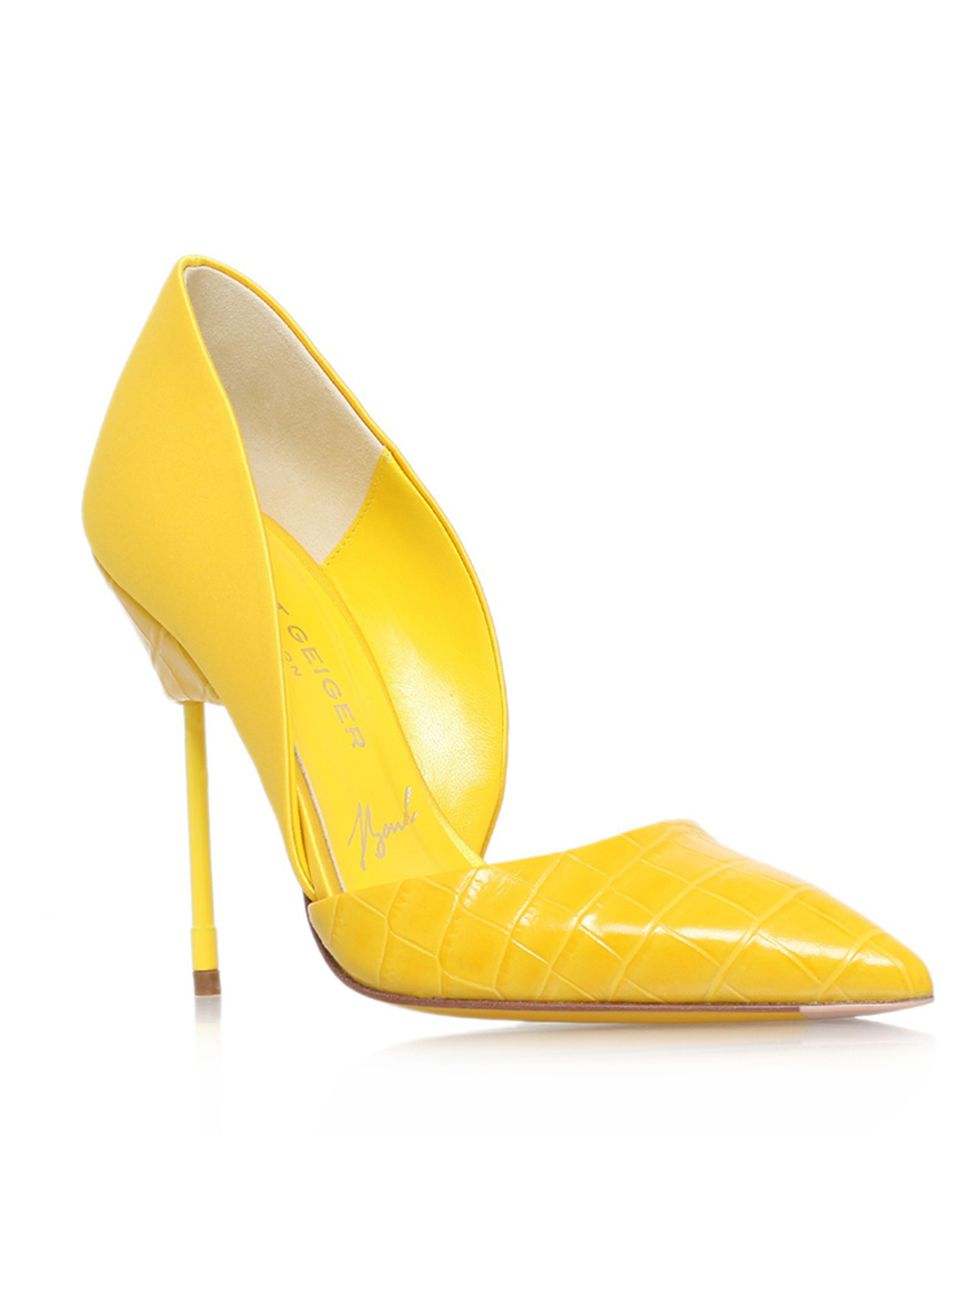 <p><a href="http://www.kurtgeiger.com/bond-yellow-leather-38-5-kurt-geiger-london-shoe.html" target="_blank">Kurt Geiger</a> heels, £270</p>